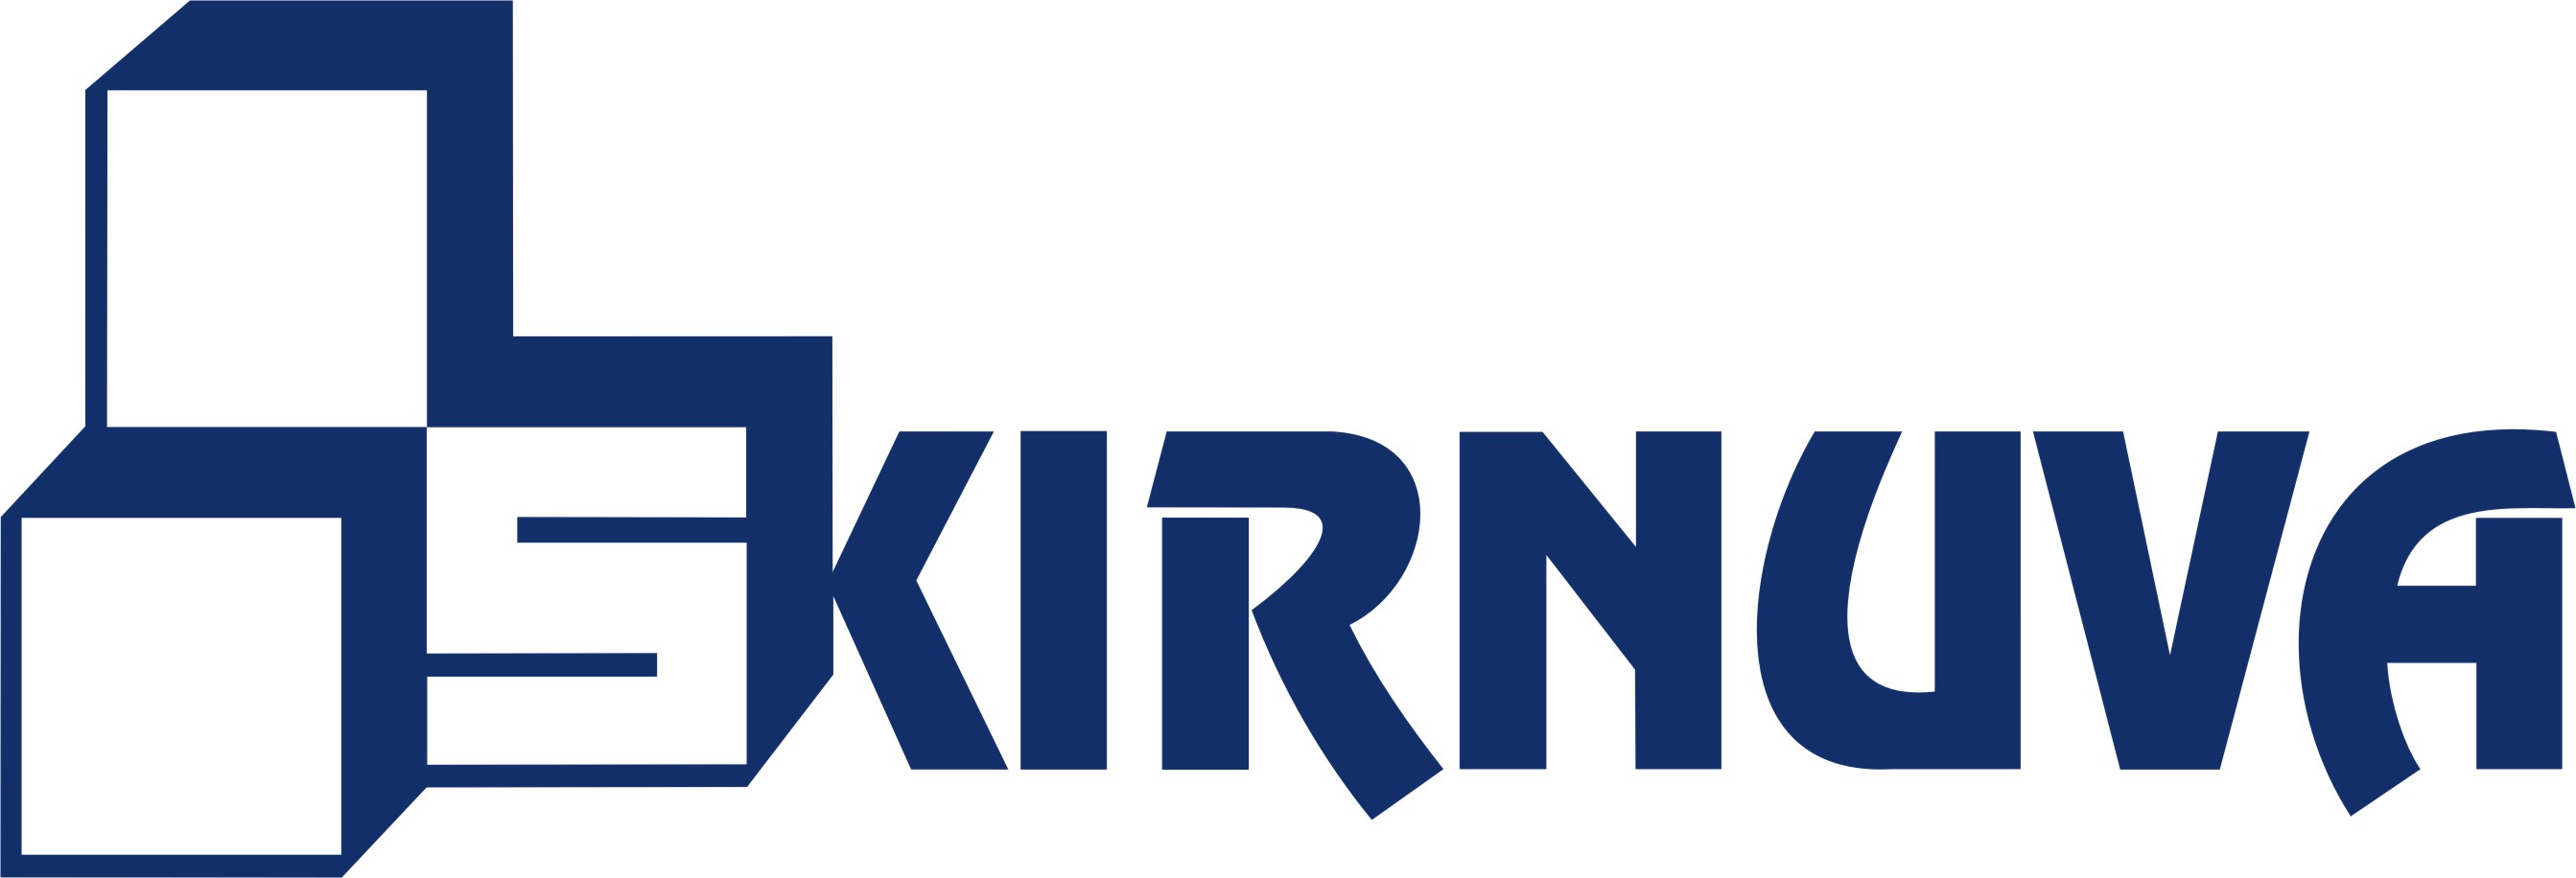 SKIRNUVA_logo